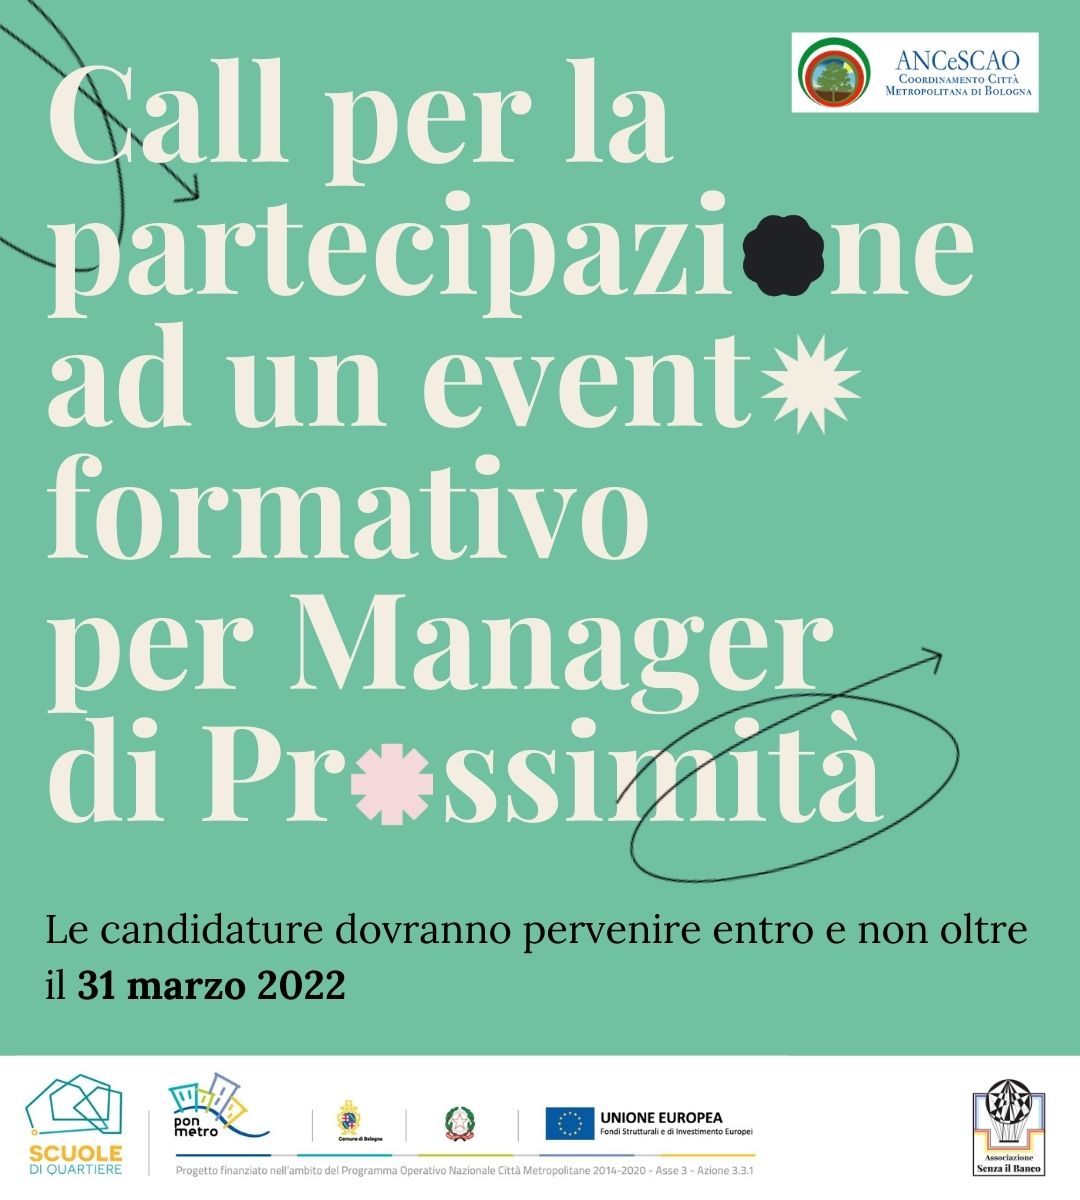 Al momento stai visualizzando ANCeSCAO Bologna promuove una Call per un evento formativo per manager di prossimità